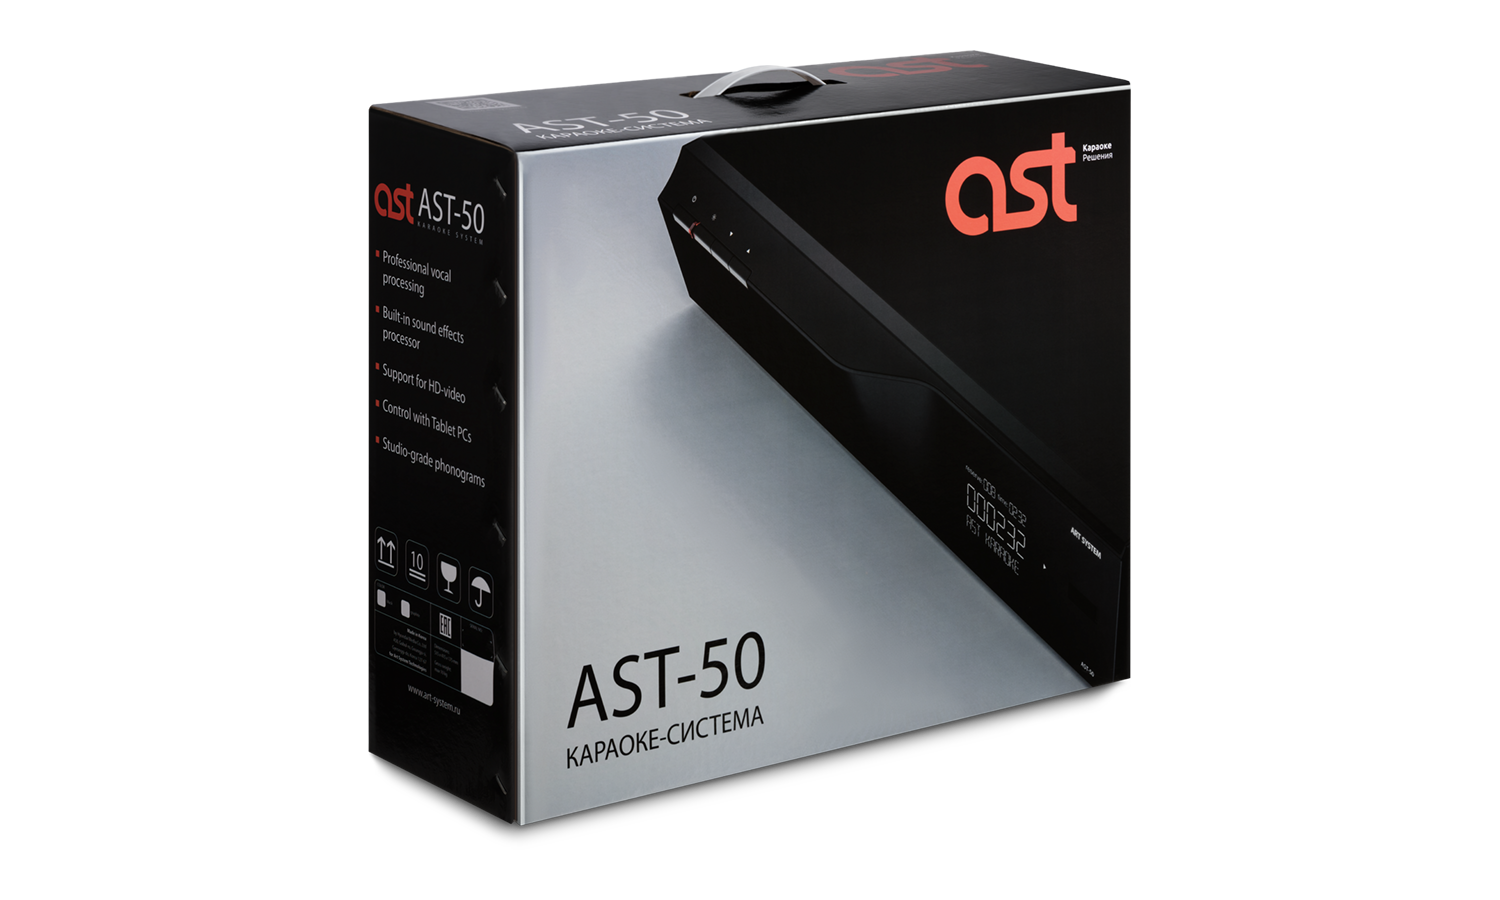 AST-50B караоке-система, обновление через интернет, более 20 тыс. песен, цвет черный